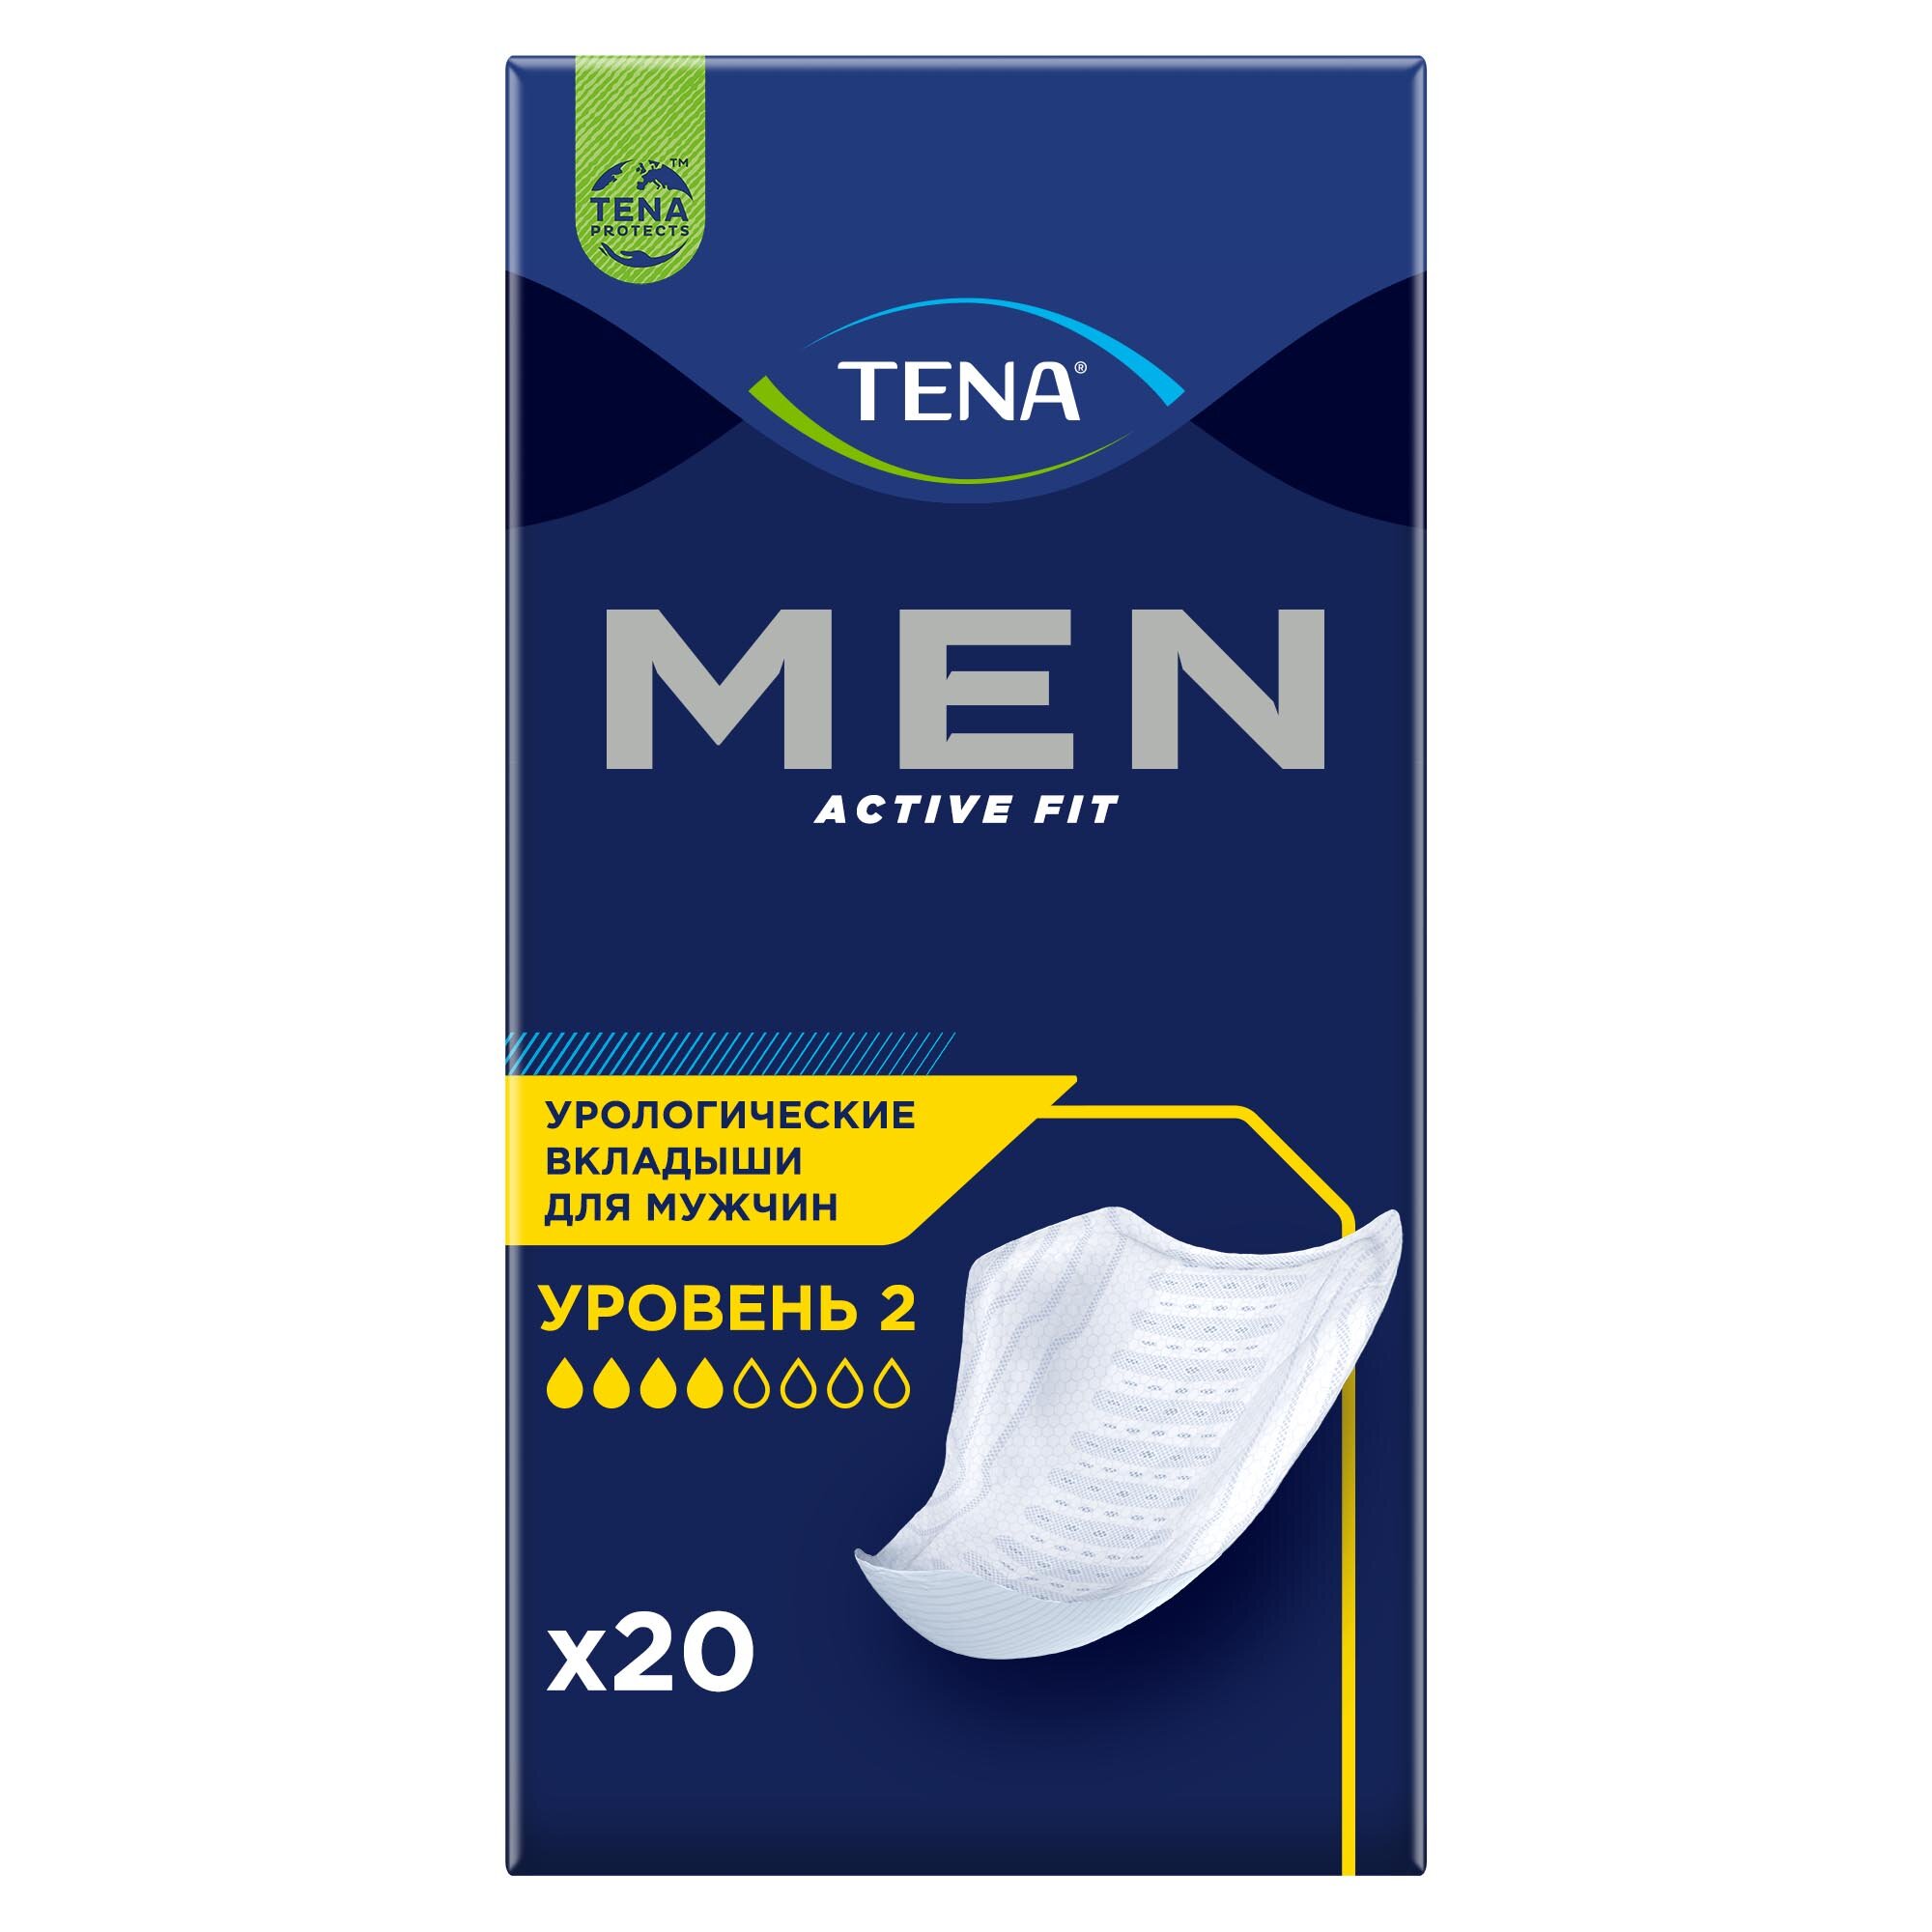 Урологические прокладки TENA Men Active Fit 2 уровень